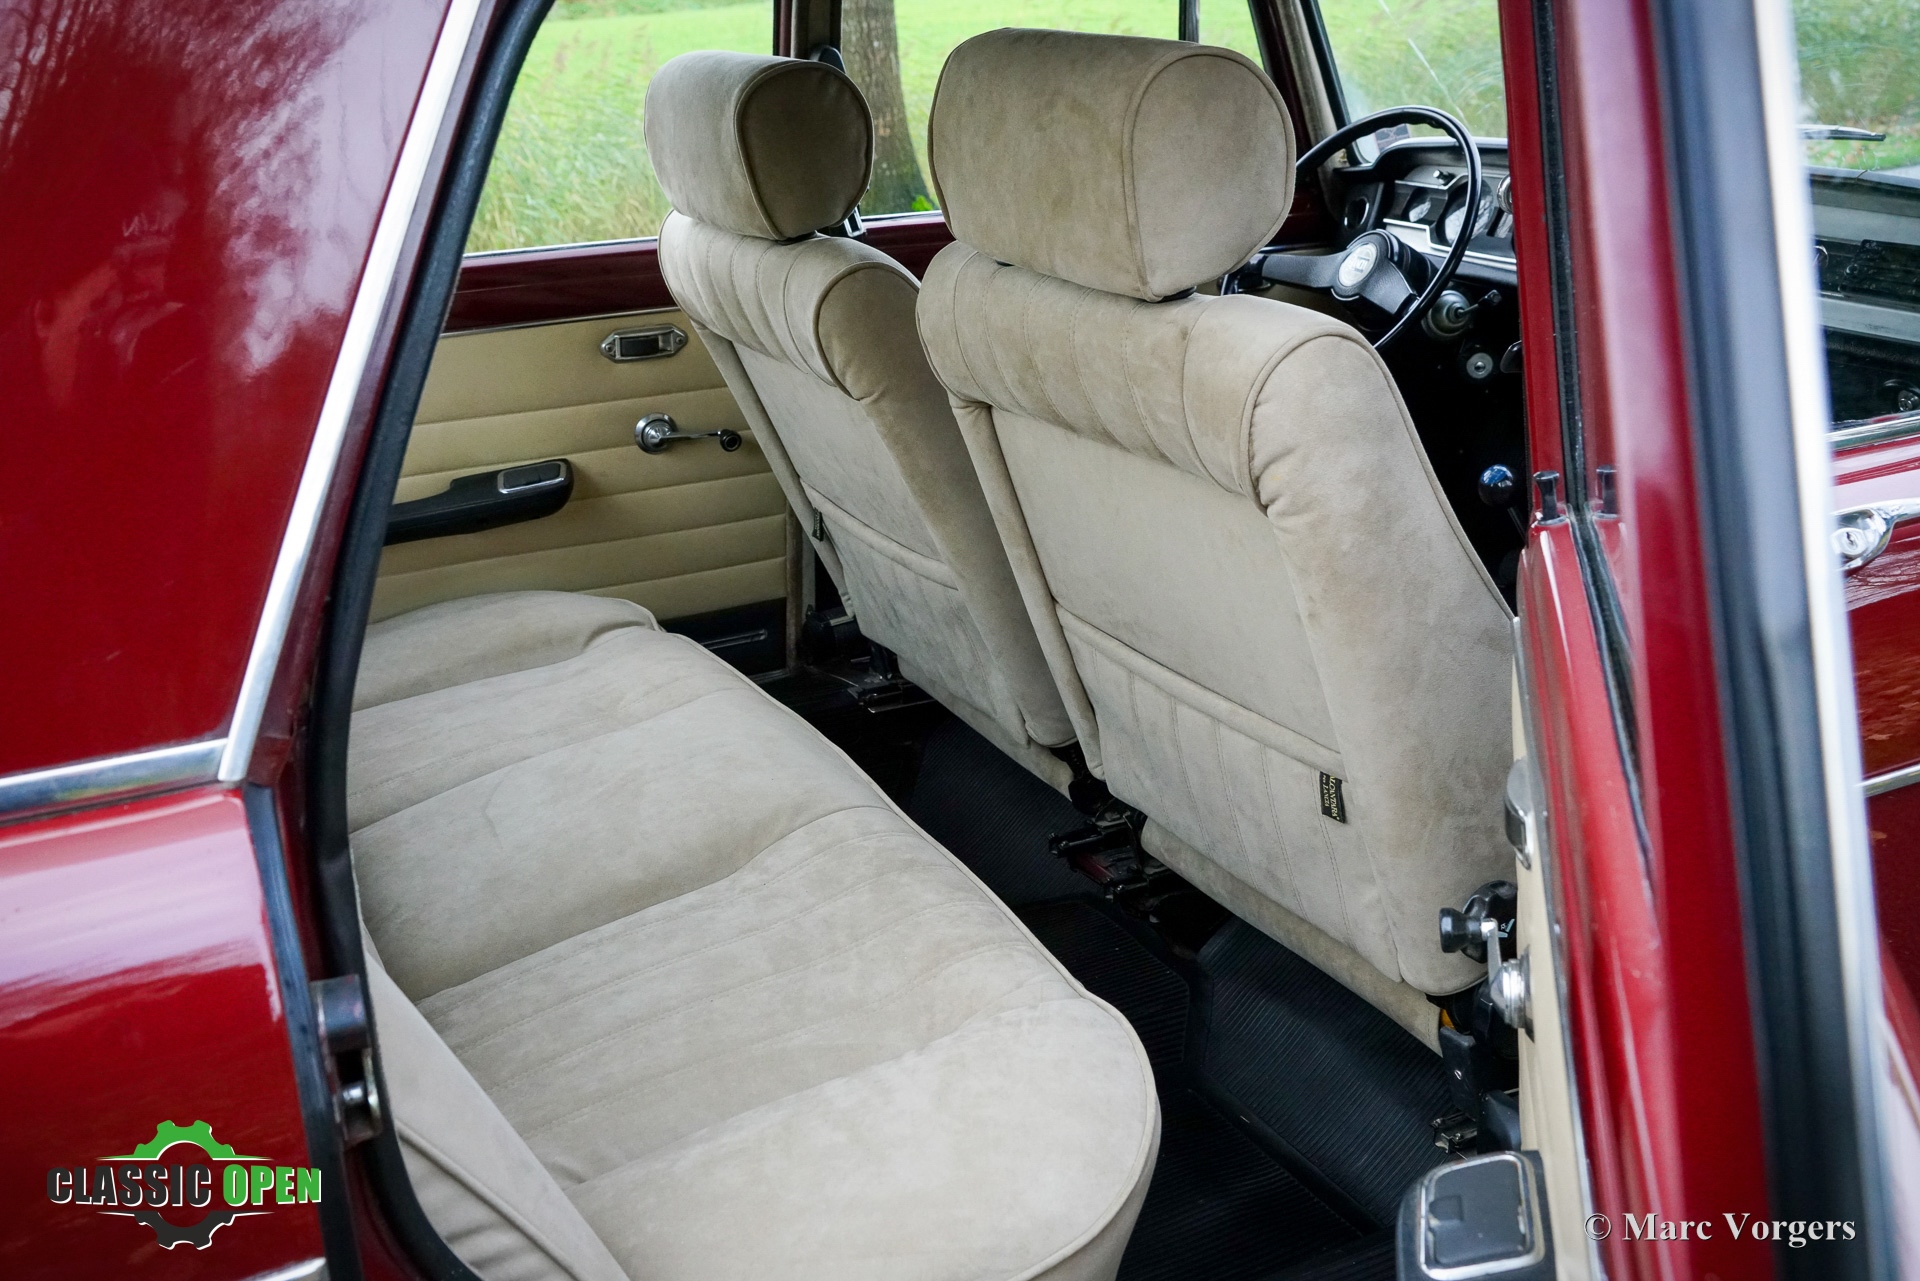 1972 Lancia Fulvia oldtimer te koop